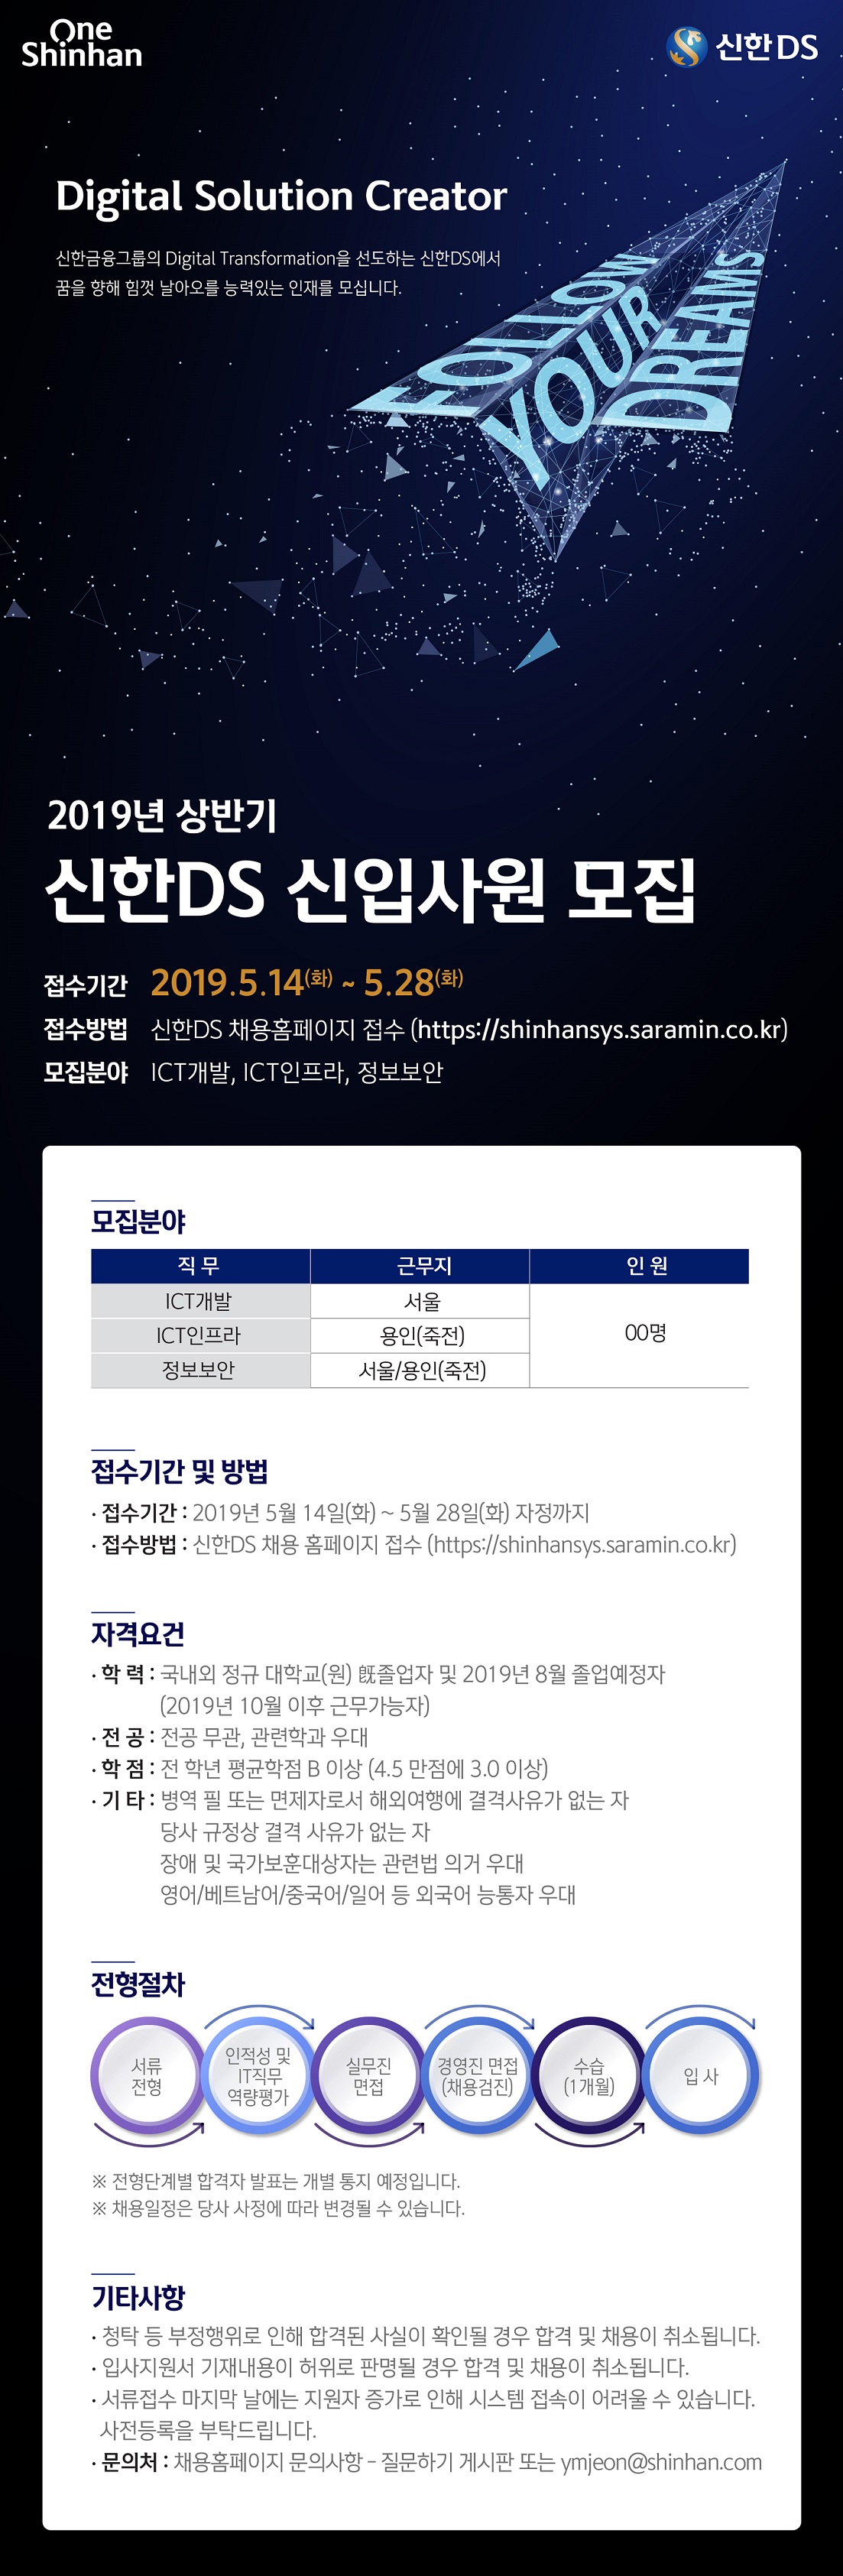 2019상 신한DS 웹플라이어